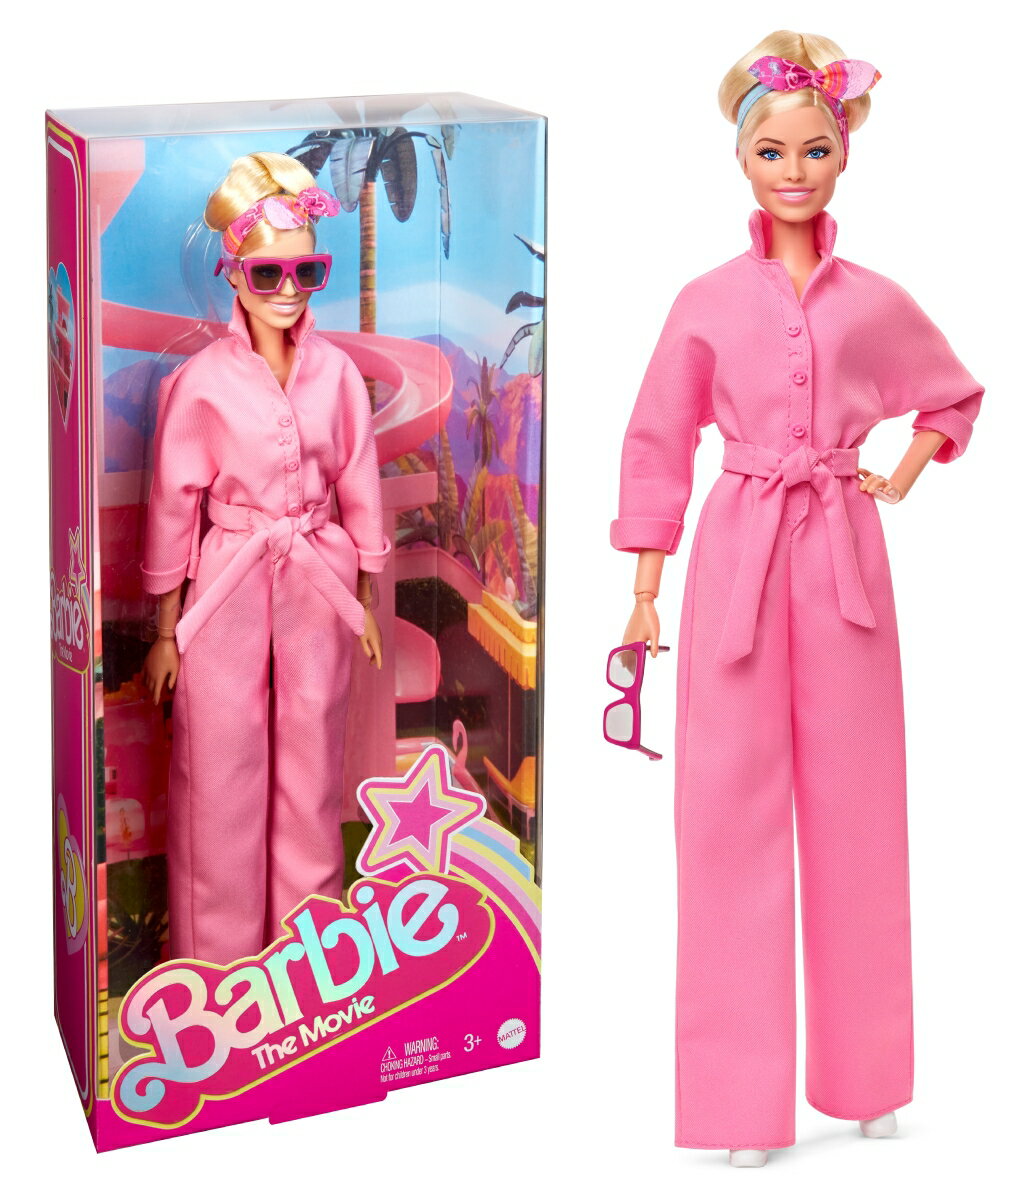 バービー(Barbie) 映画「バービー」 ボイラースーツ 【着せ替え人形・ドール】 【3才~】 HRF29